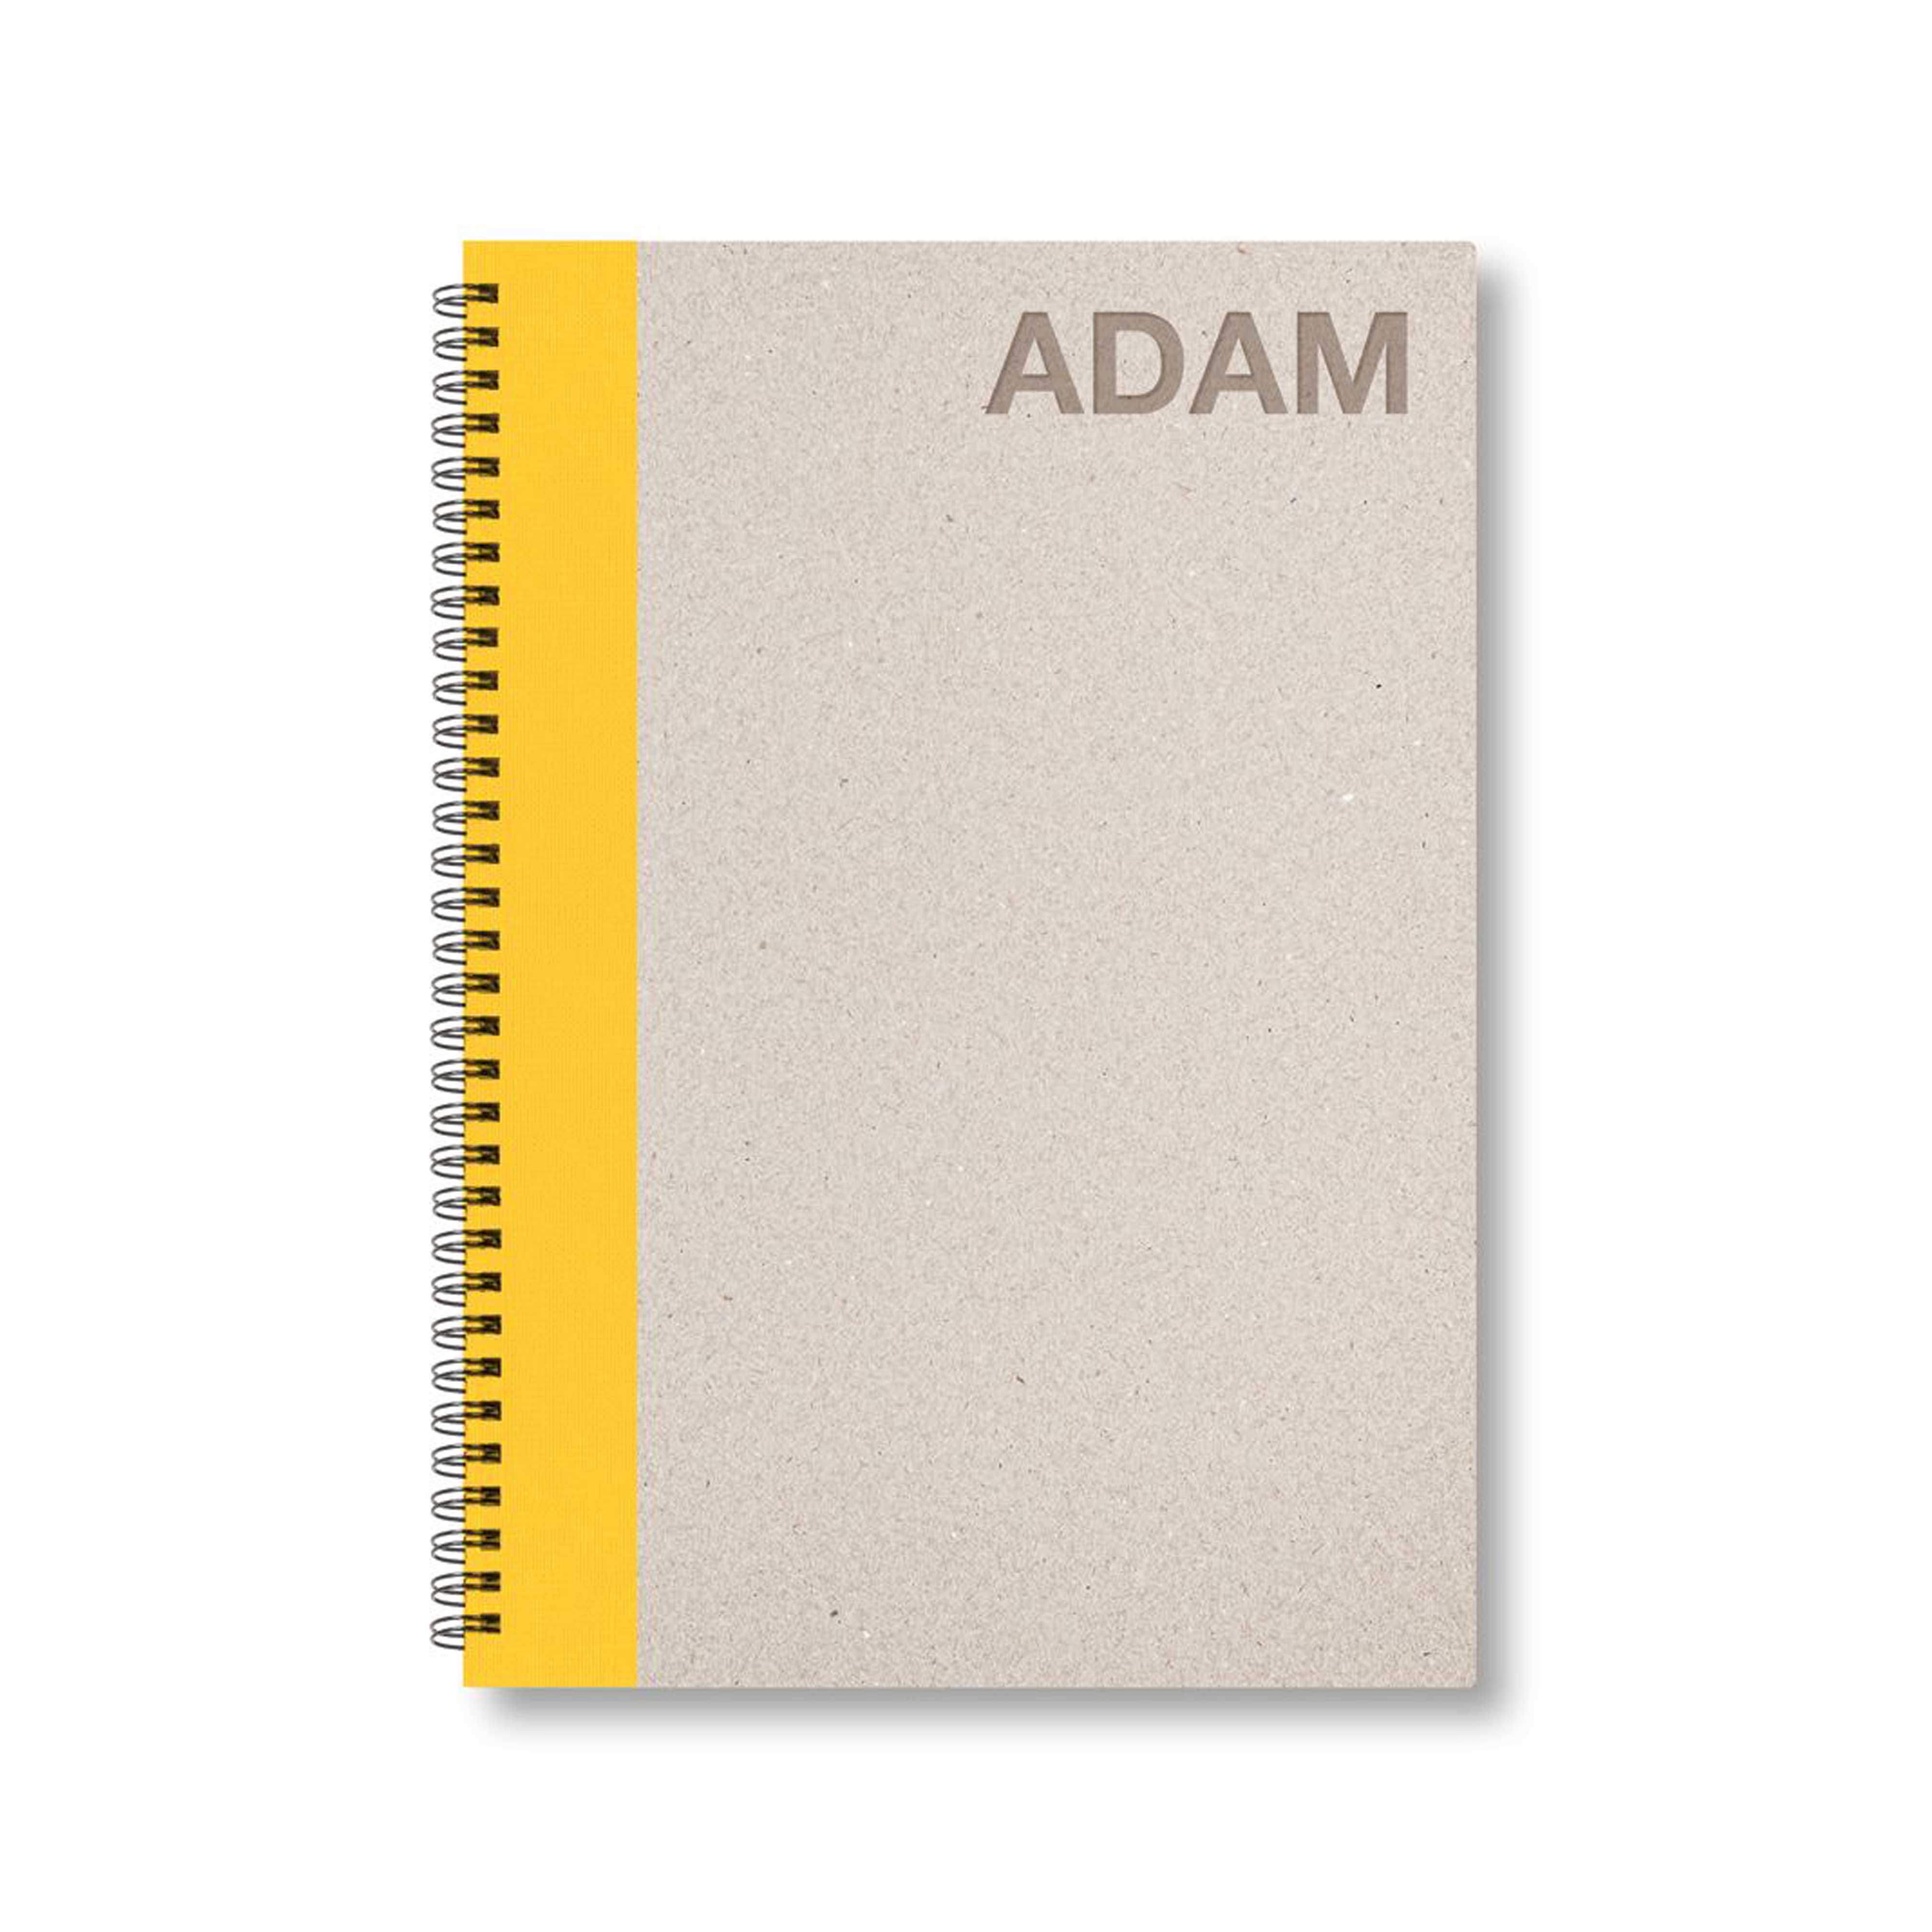 BOBO Zápisník, B5, linkovaný, žlutý, konfiguruj si obálku